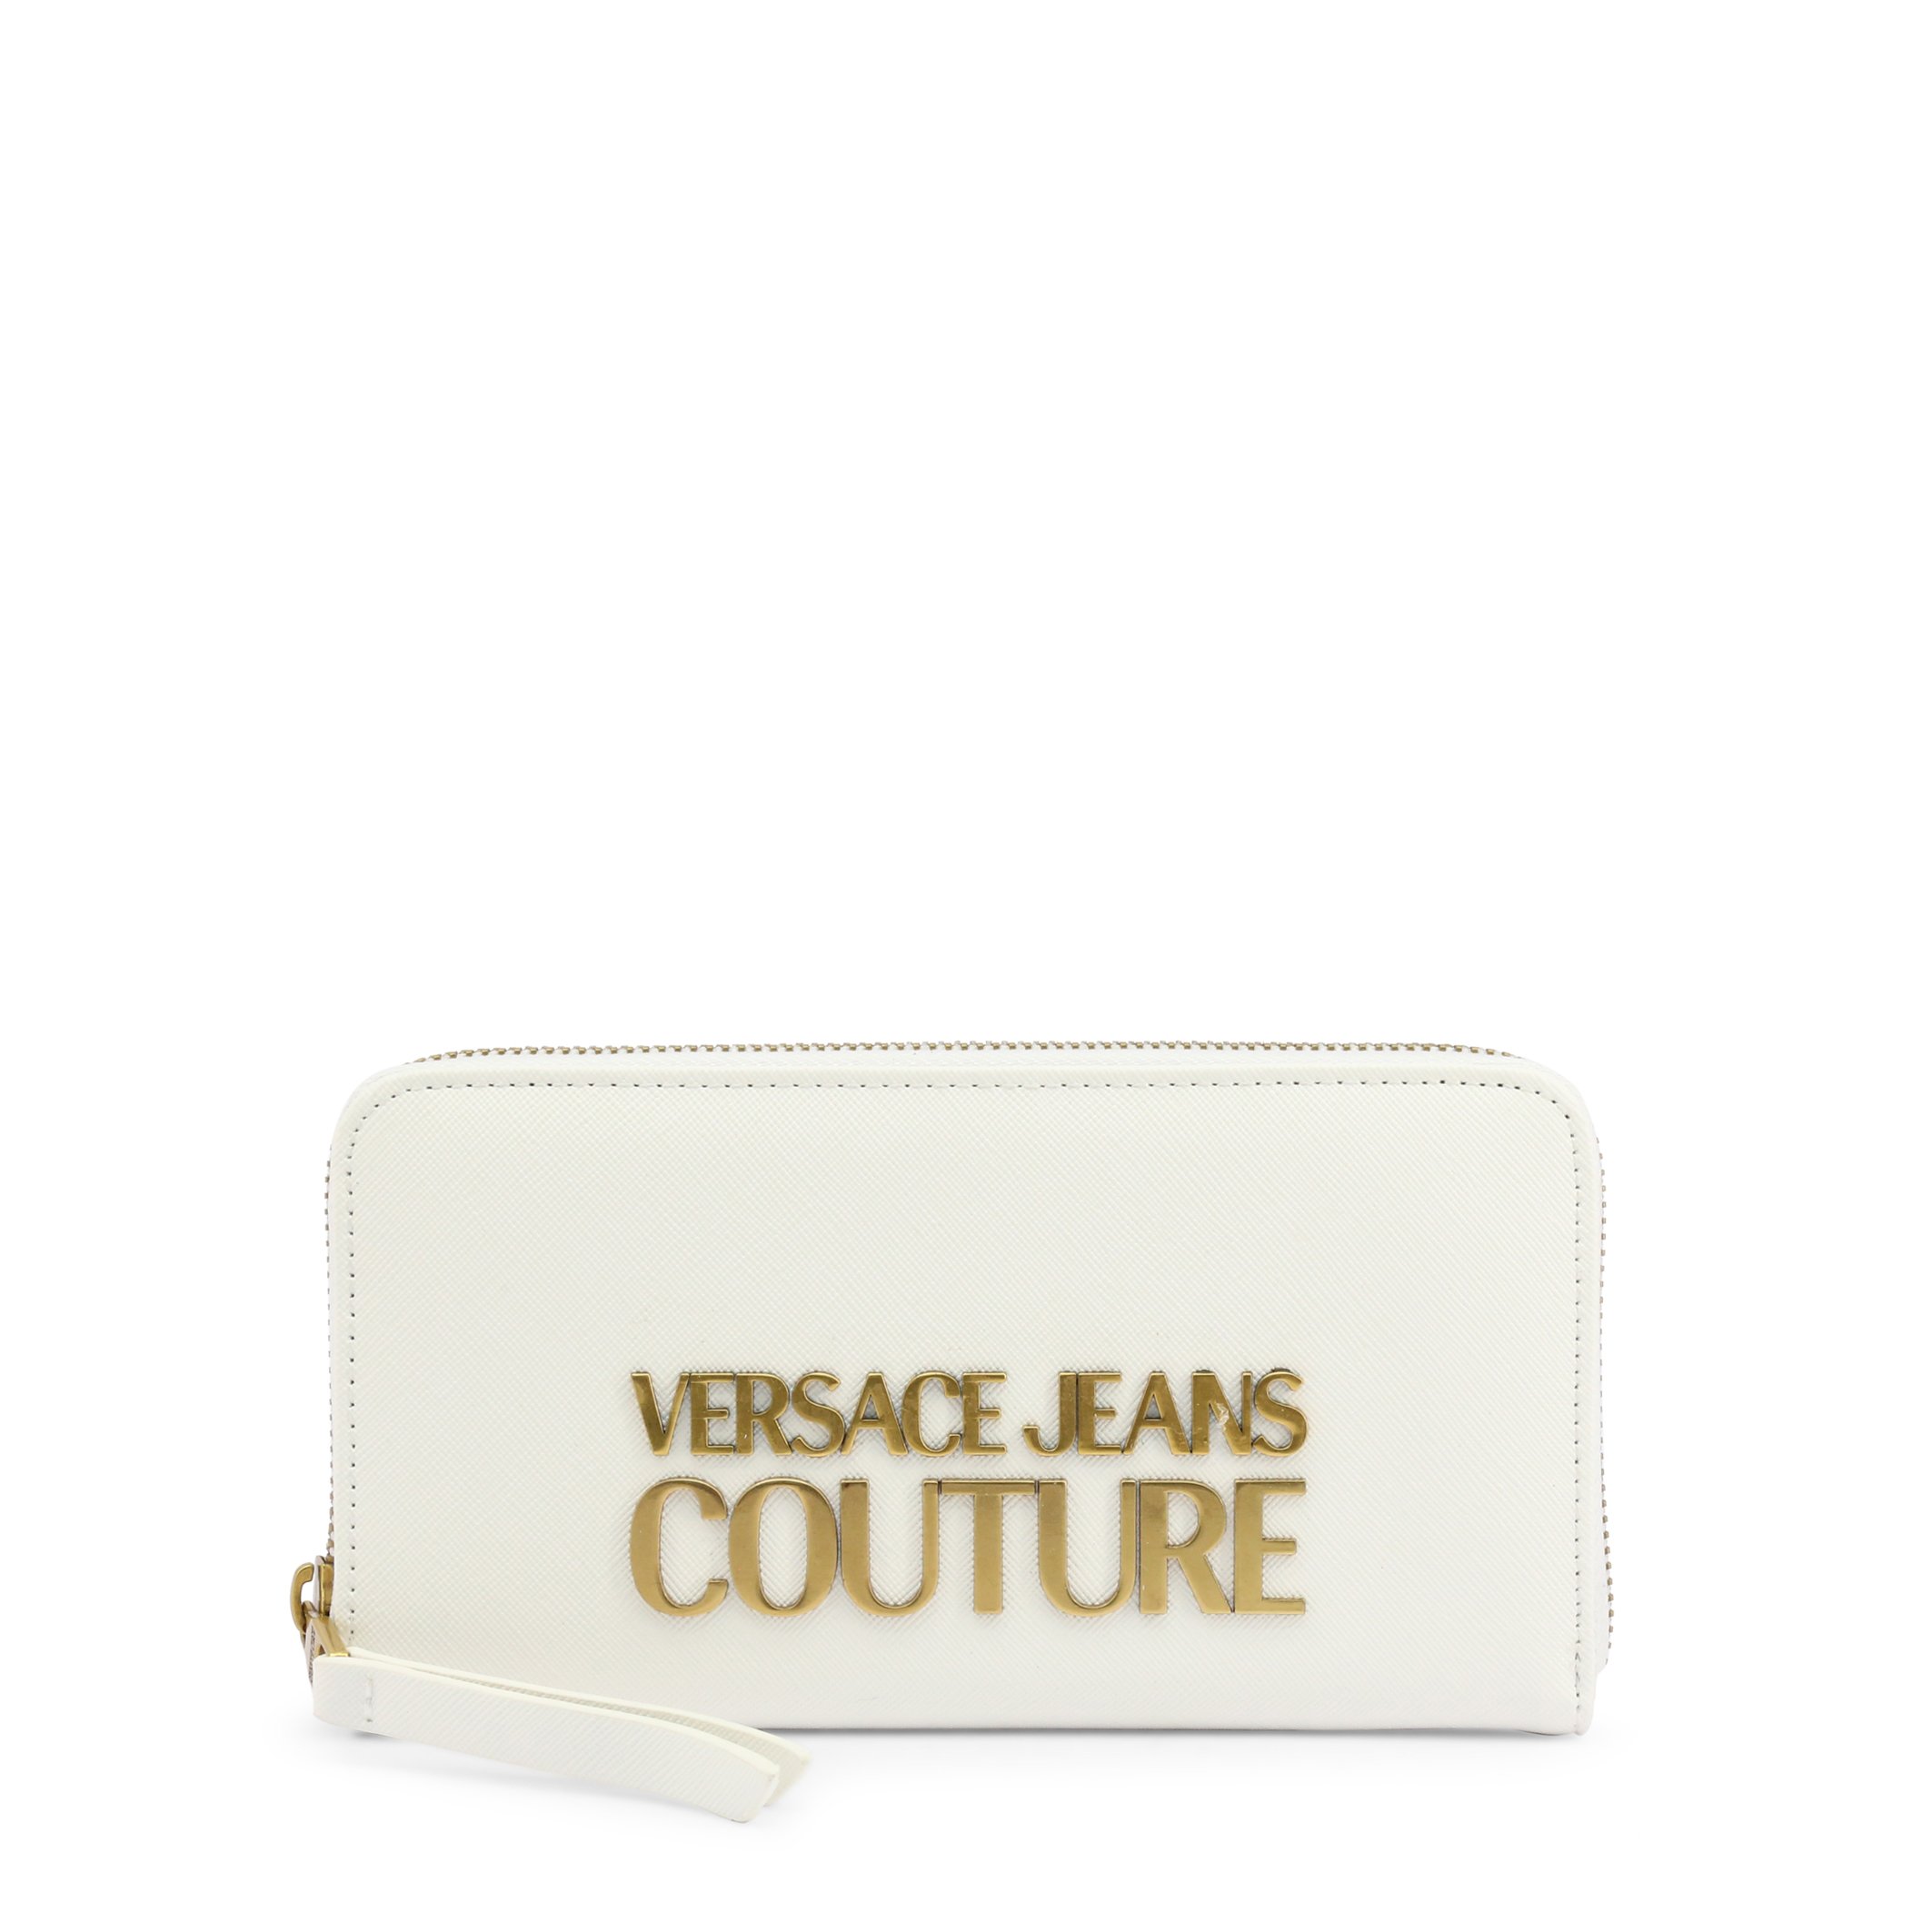 Versace Jeans Women's Wallet Various Colours E3VWAPL1_71879 - white NOSIZE